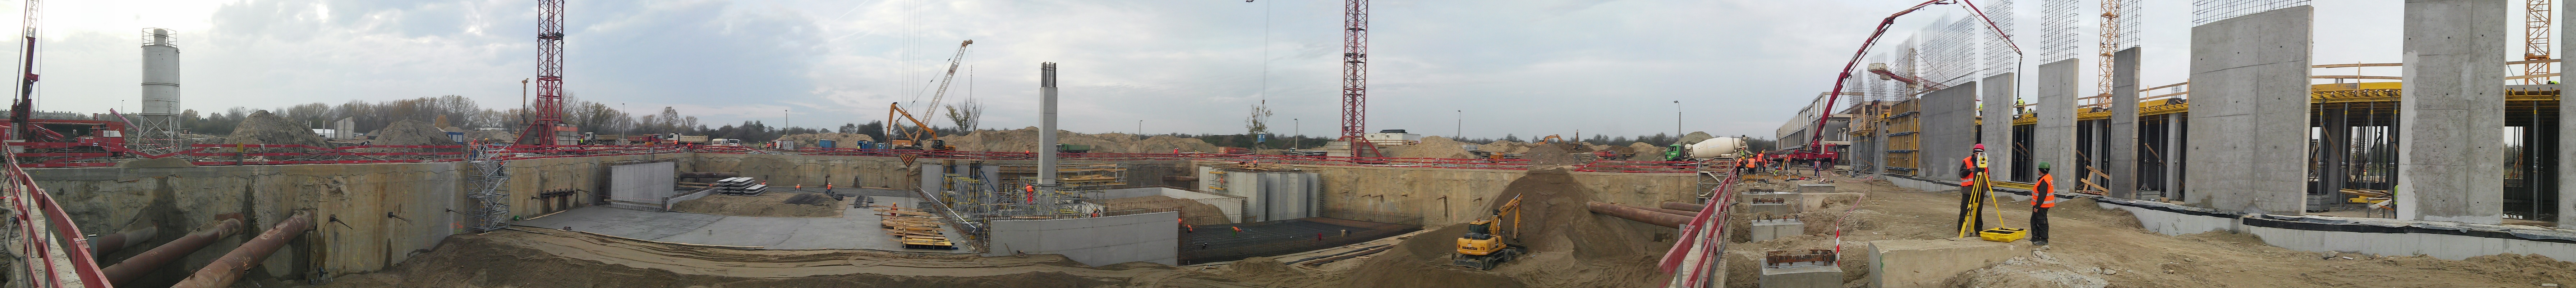 A Szegeden épülő Eli-Alps lézerközpont kivitelezési munkálatai 2014. áprilisban kezdődtek. A projektet konzorciumban a Strabag és a Swietelsky építi. A Strabaghoz a Frissbeton Kft. Szállítja a betont, a Swietelskyhez a TBG-Szeged Kft. A Swietelsky Kft az ő kivitelezésében készült épületek szerkezetépítésével 95%-ban elkészült